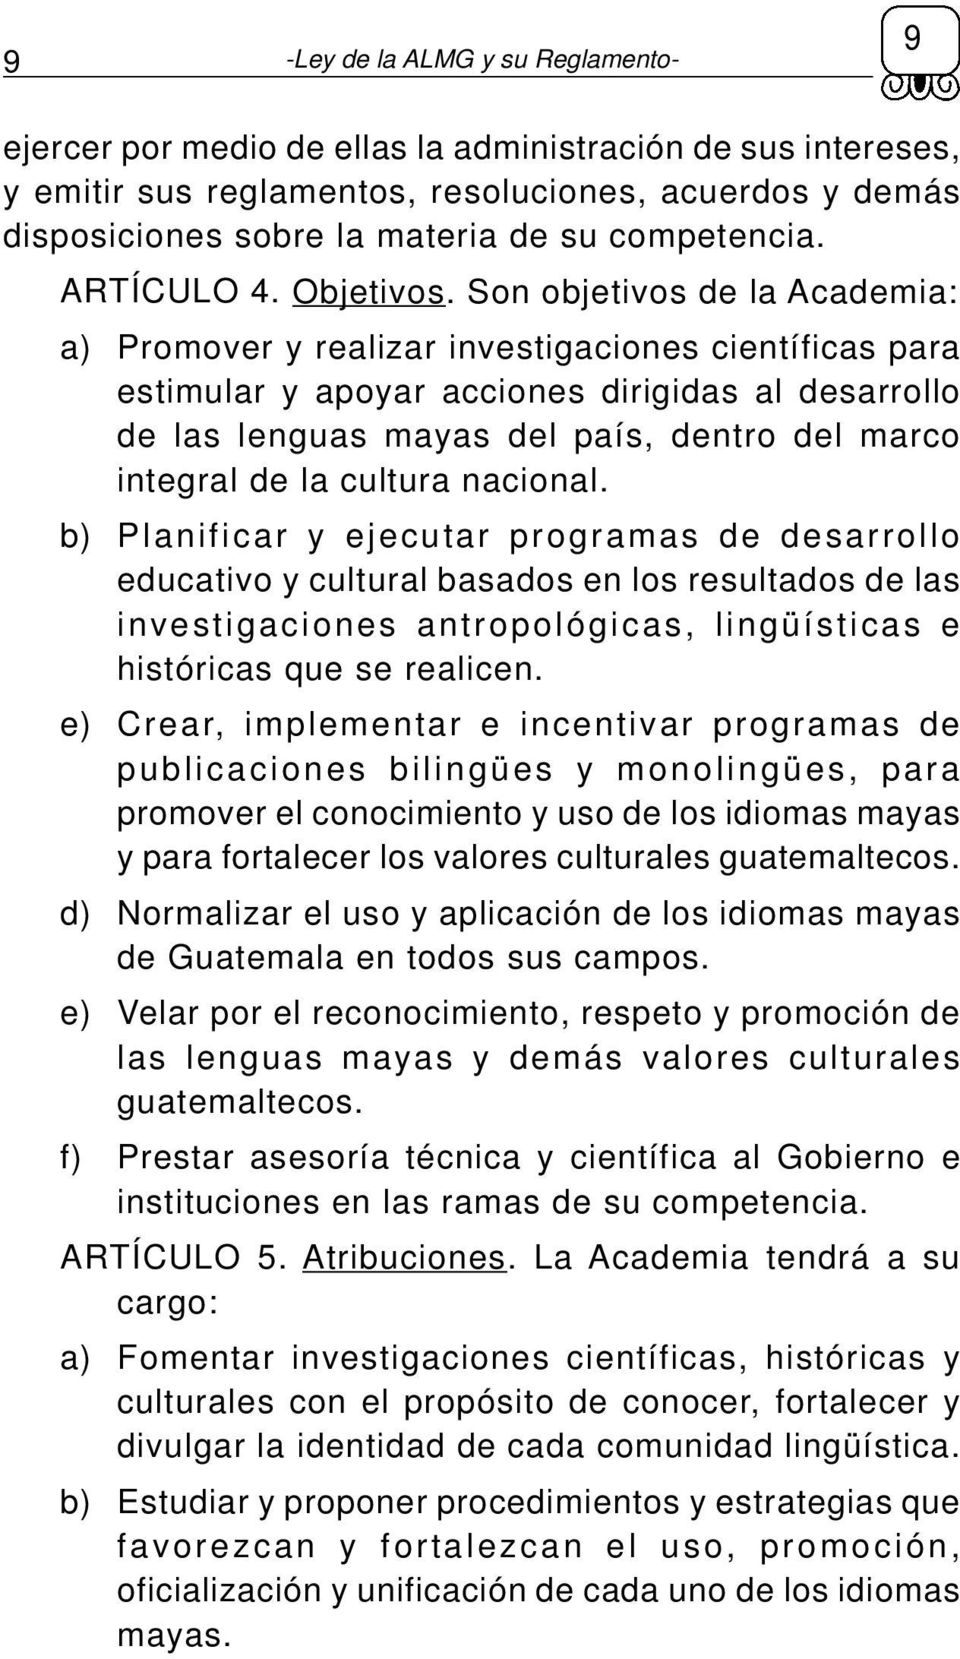 Son objetivos de la Academia: a) Promover y realizar investigaciones científicas para estimular y apoyar acciones dirigidas al desarrollo de las lenguas mayas del país, dentro del marco integral de